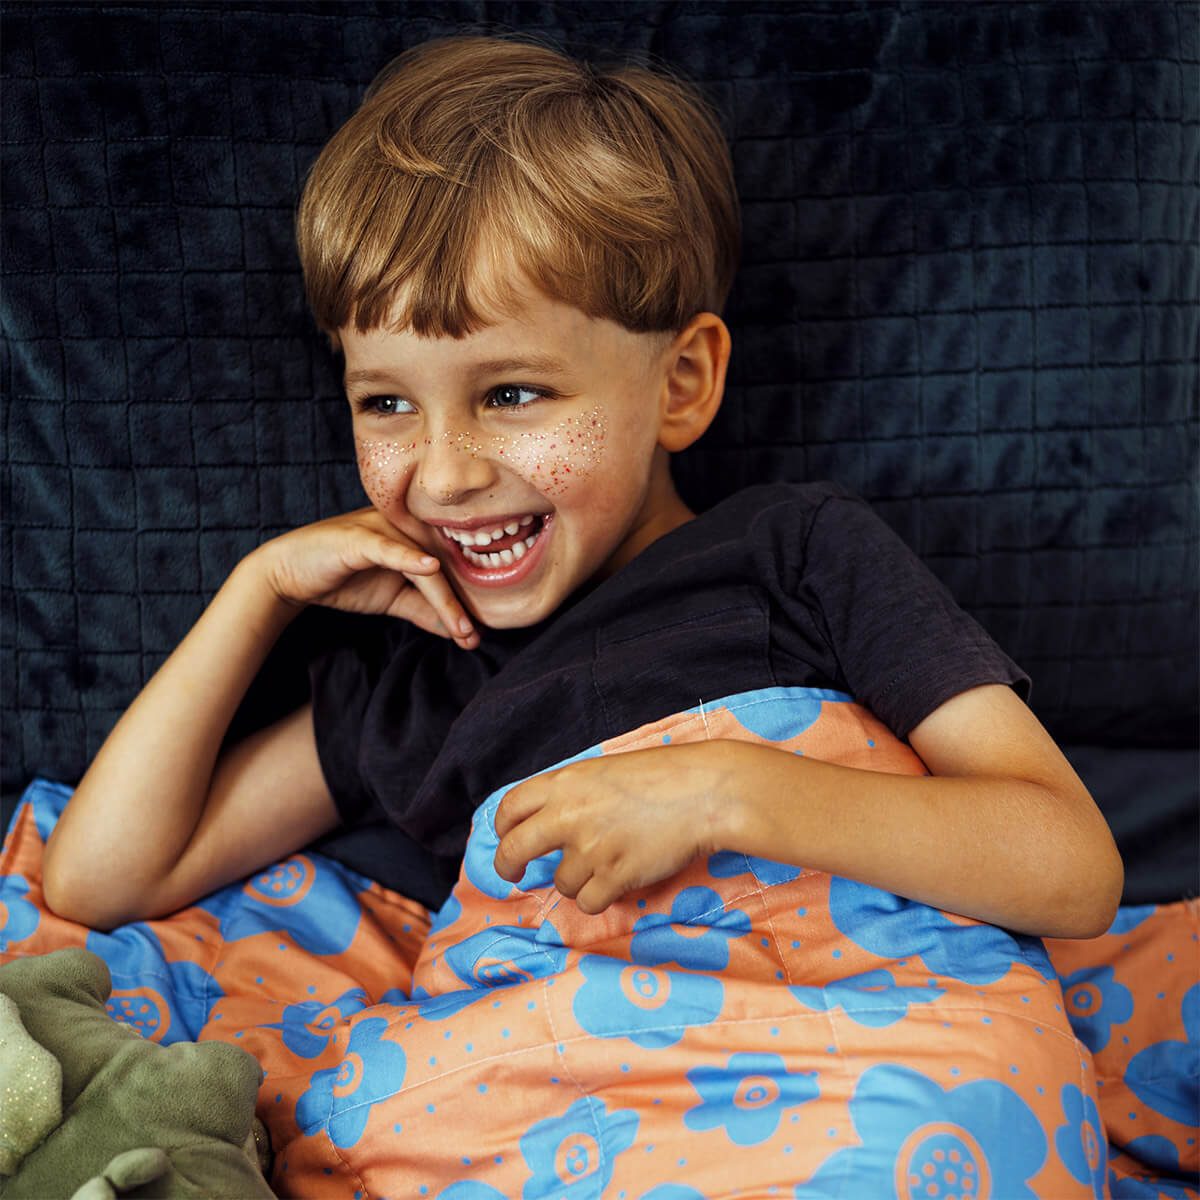 HHHC Couverture lestée pour enfants 1,8 kg 91,4 x 121,9 cm Coton égyptien  600 fils couvertures lestées pour tout-petits, couvertures lestées pour lit